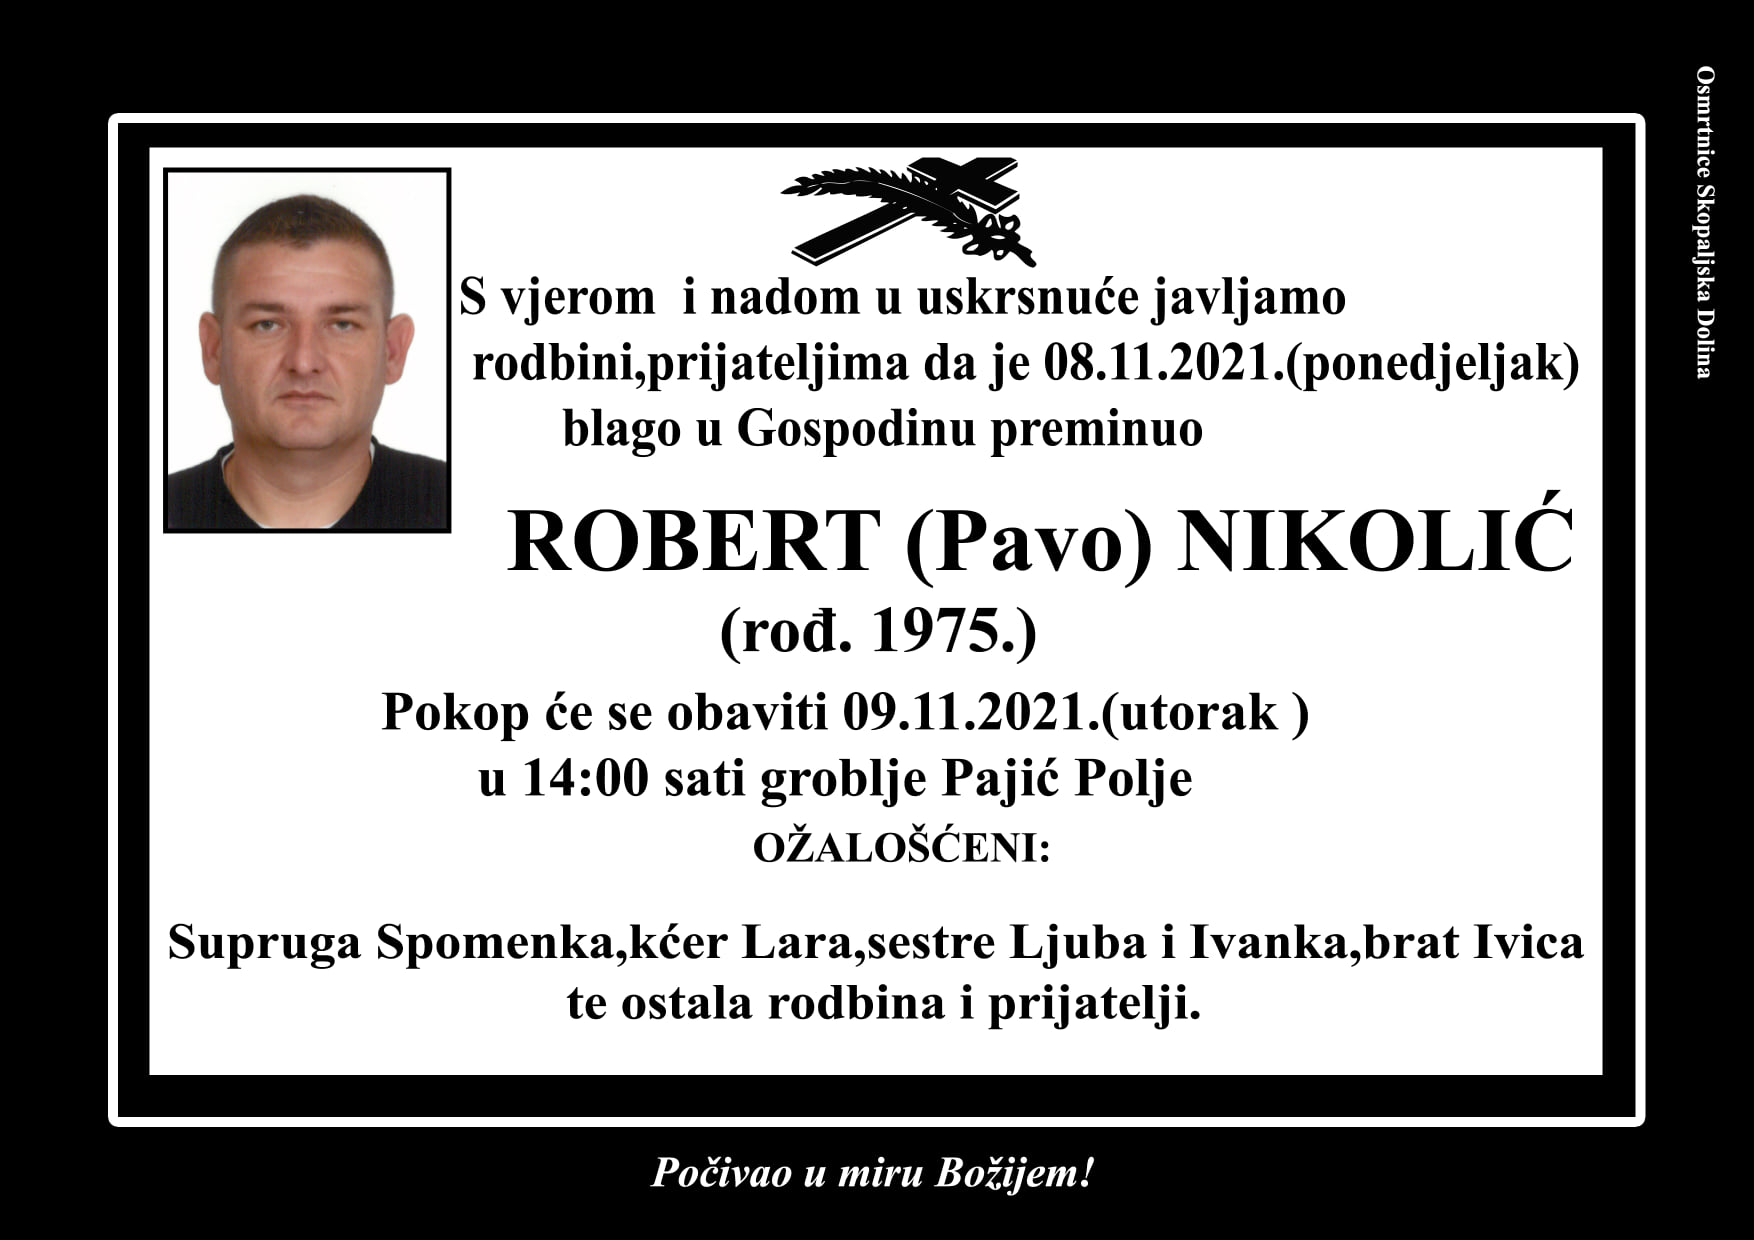 Robert Nikolić